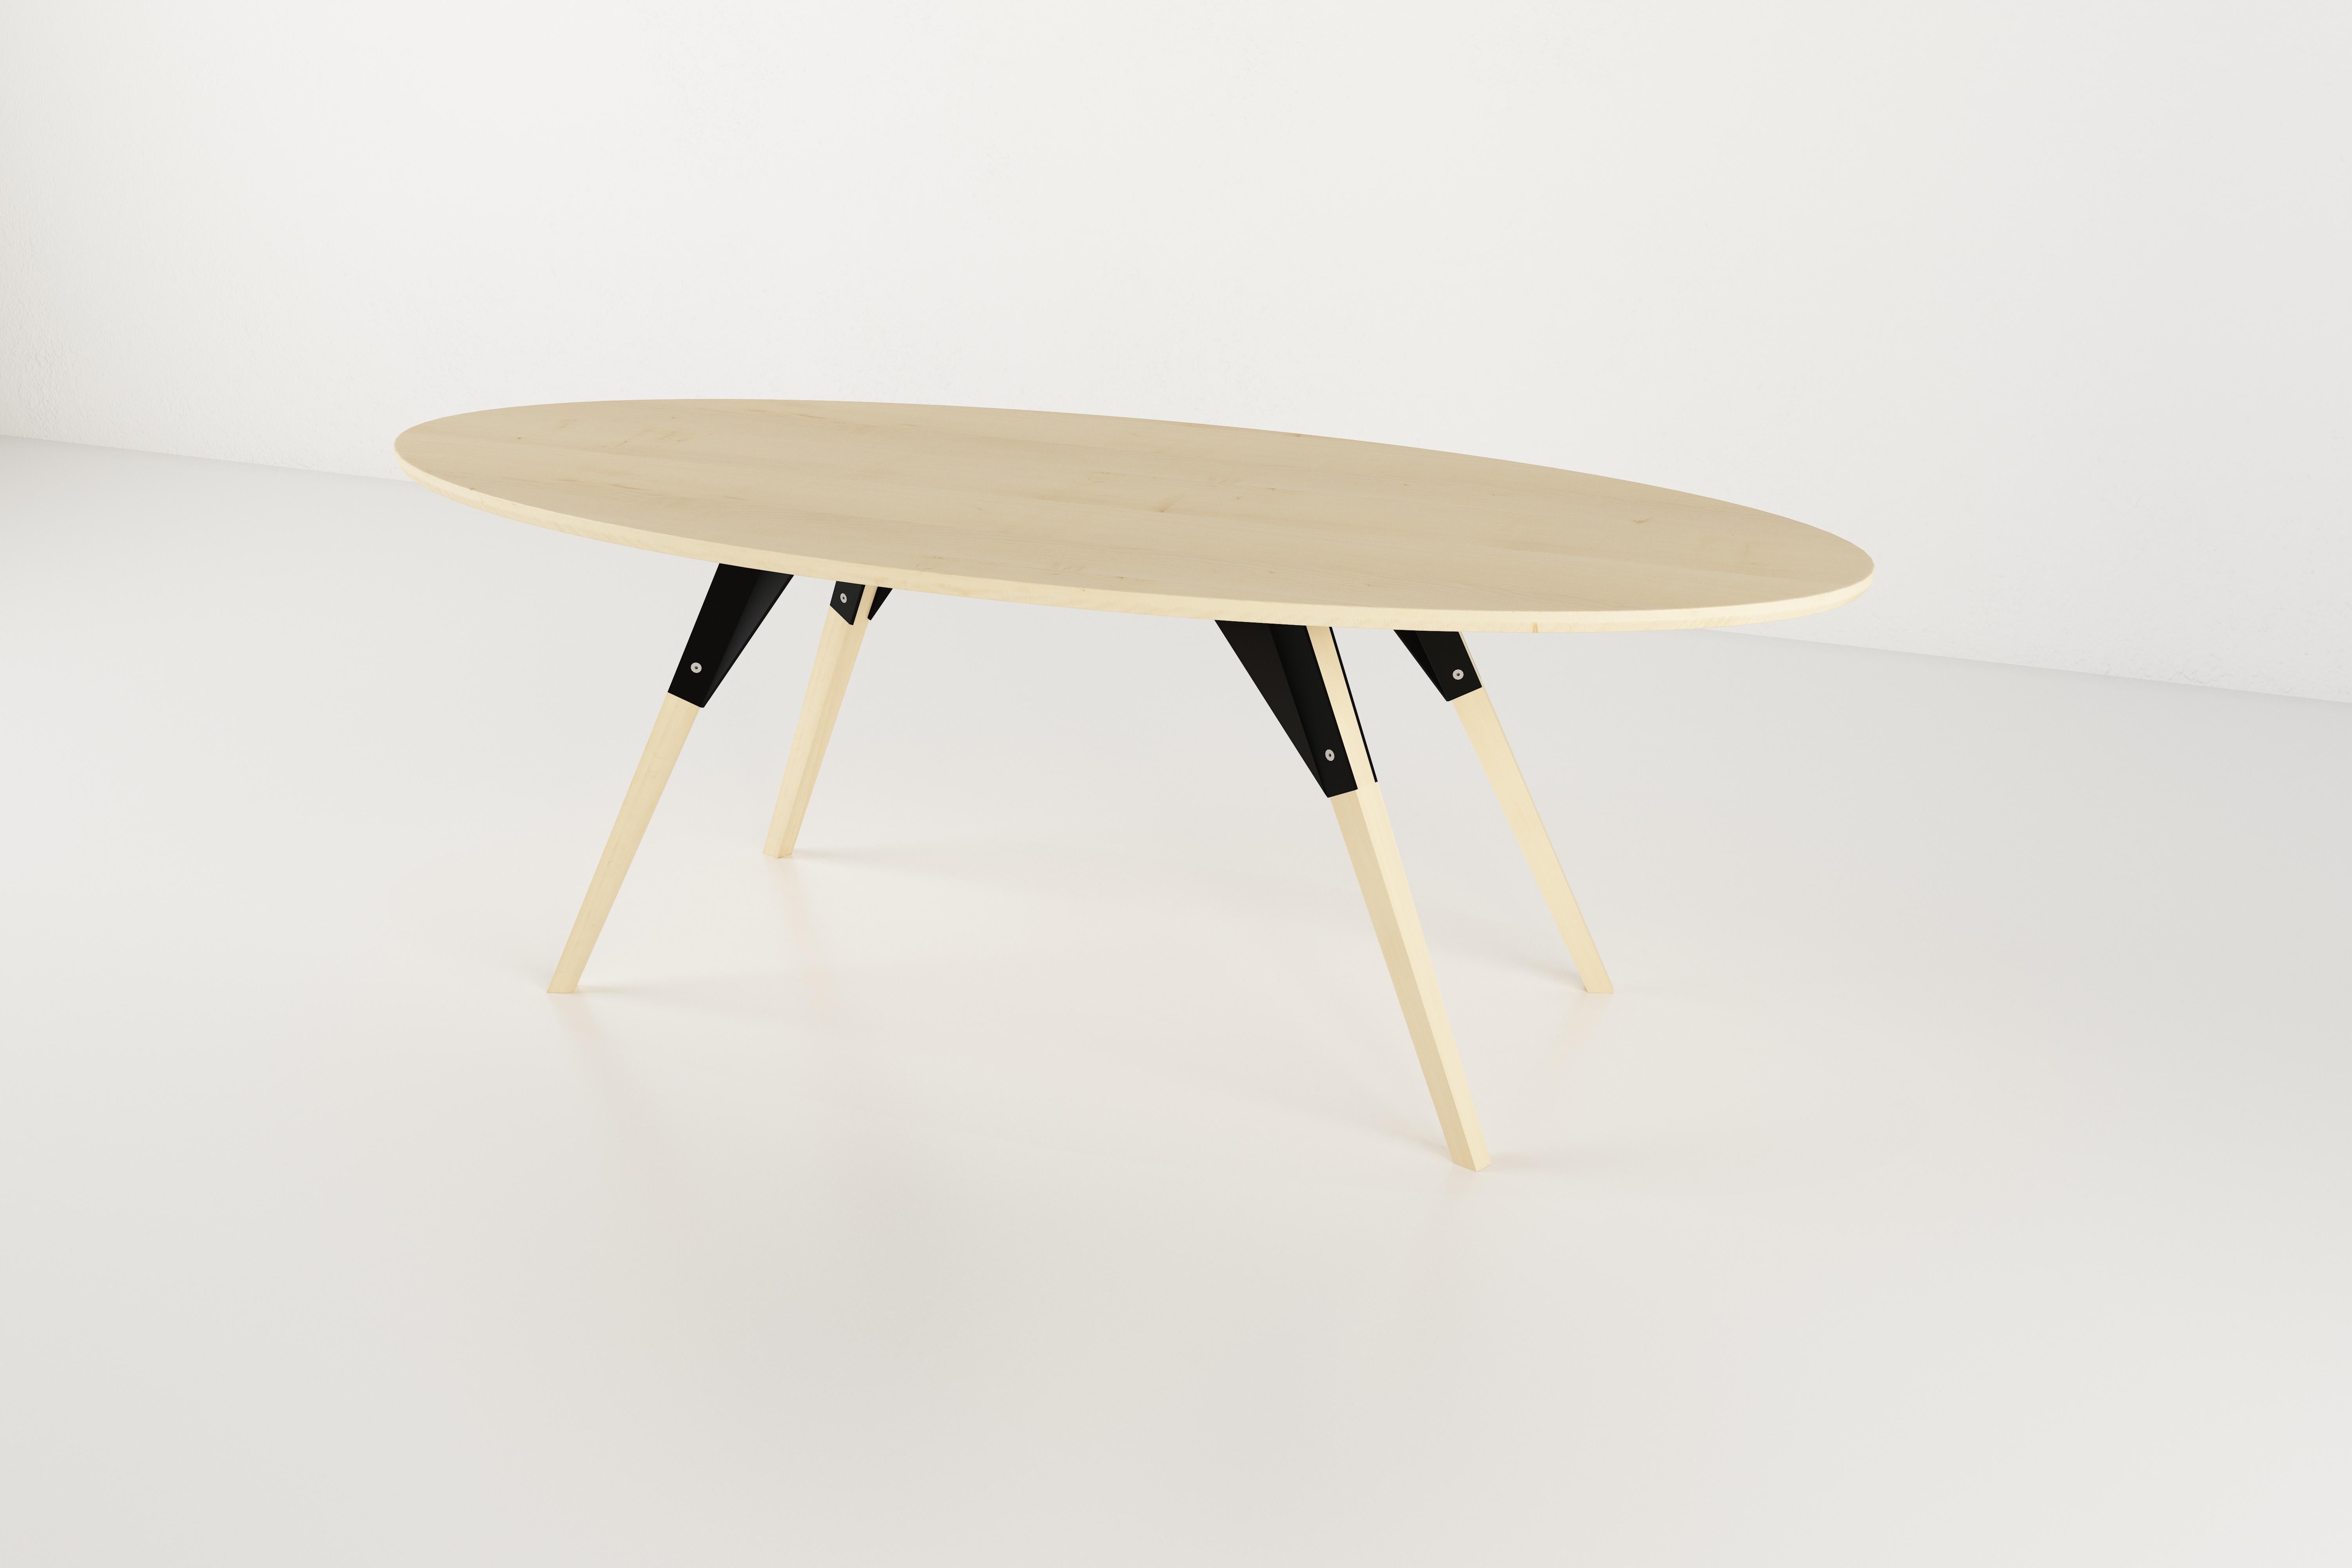 Die Clarke Collection ist in zehn verschiedenen Tischplattengrößen, zwei Holzarten und zwei Metalloberflächen erhältlich. Die freiliegenden Edelstahlbolzen verwischen die Grenze zwischen skandinavischem und industriellem Stil.
 